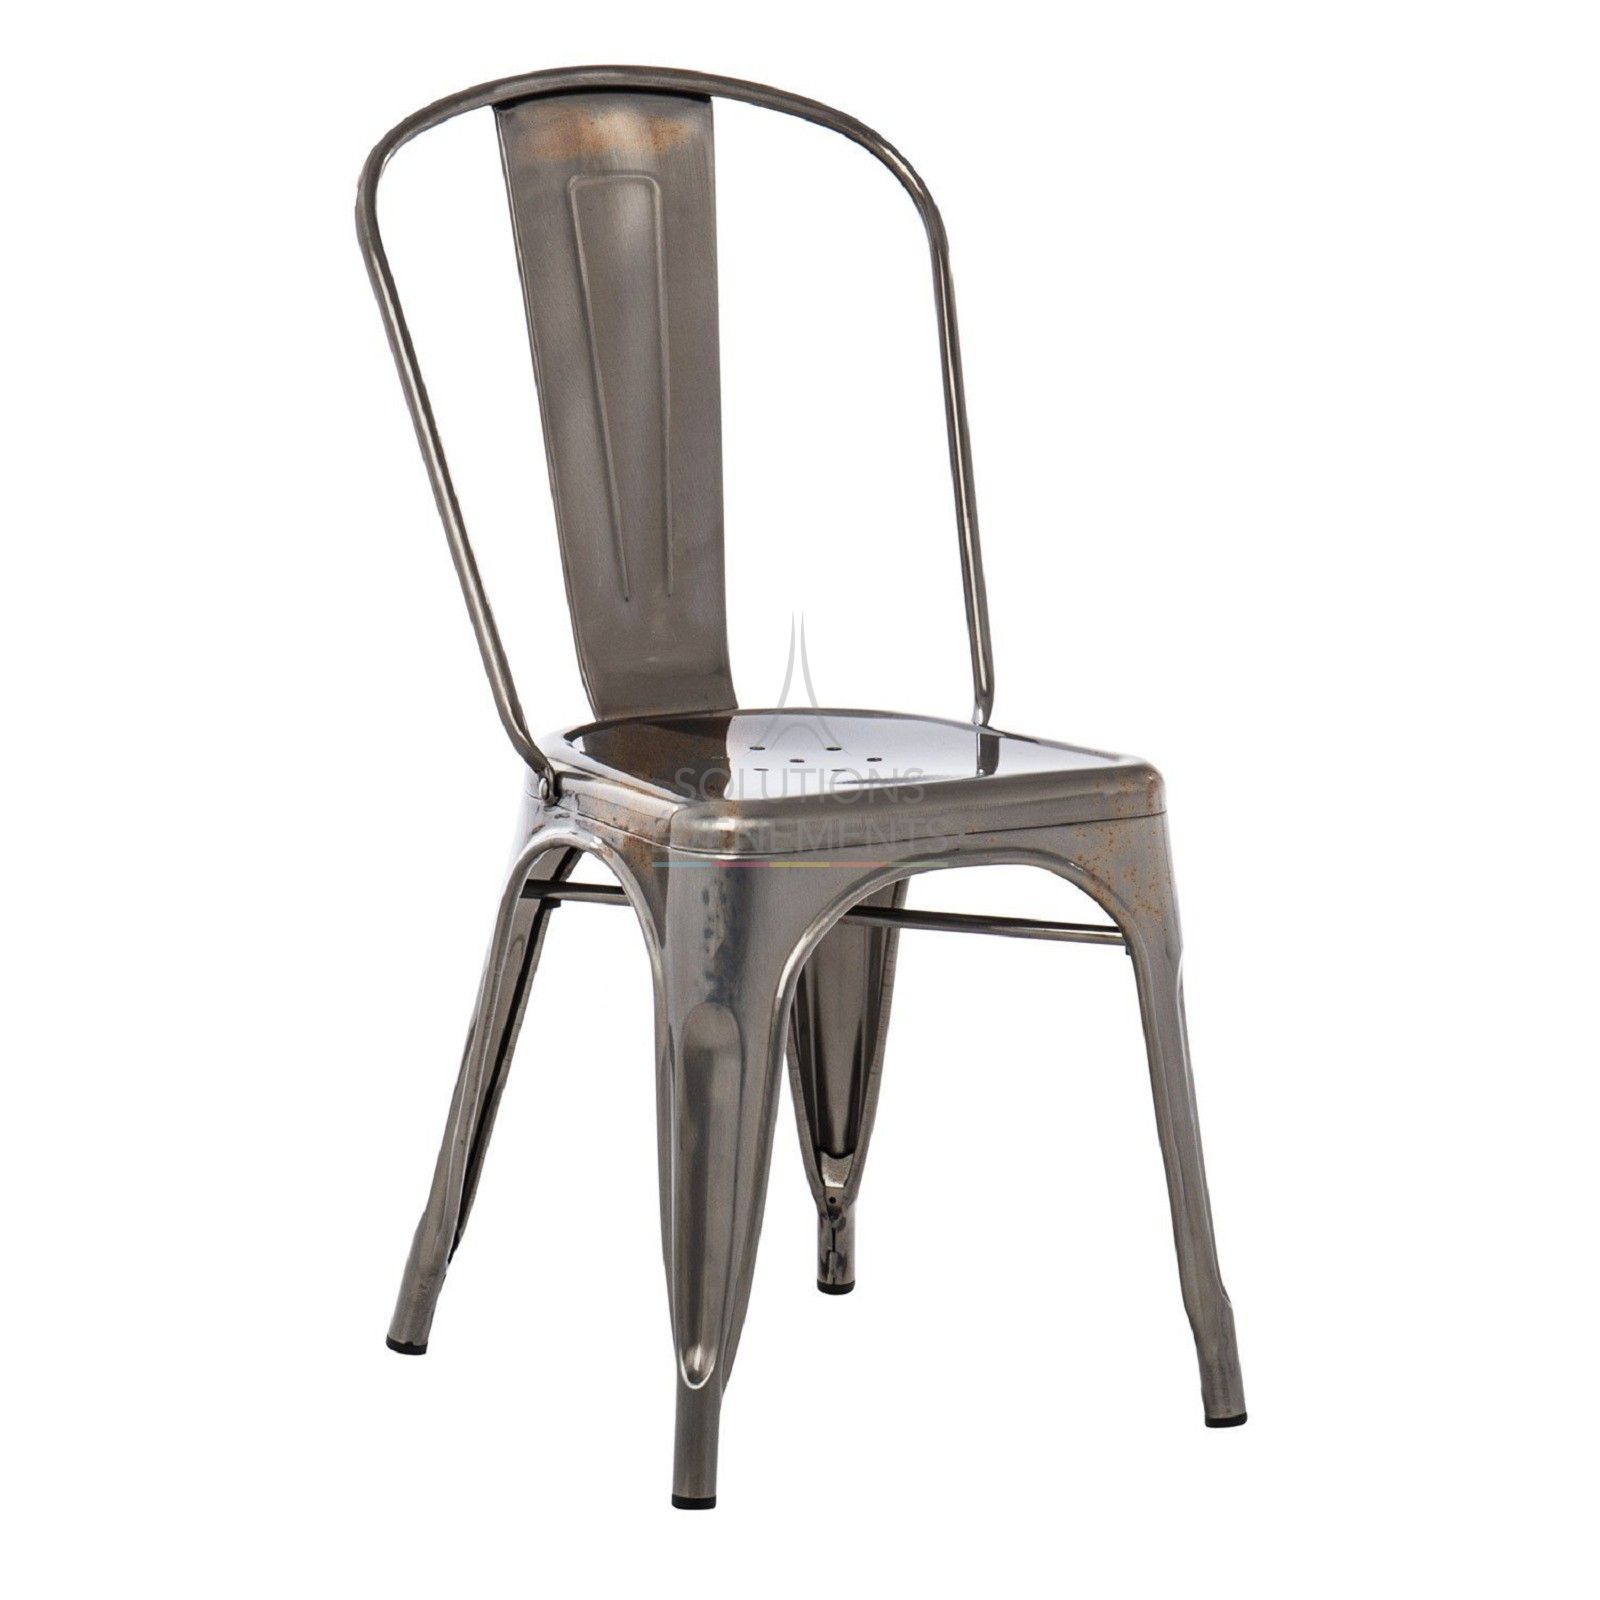 Rental of industrial metal chair in brushed steel color